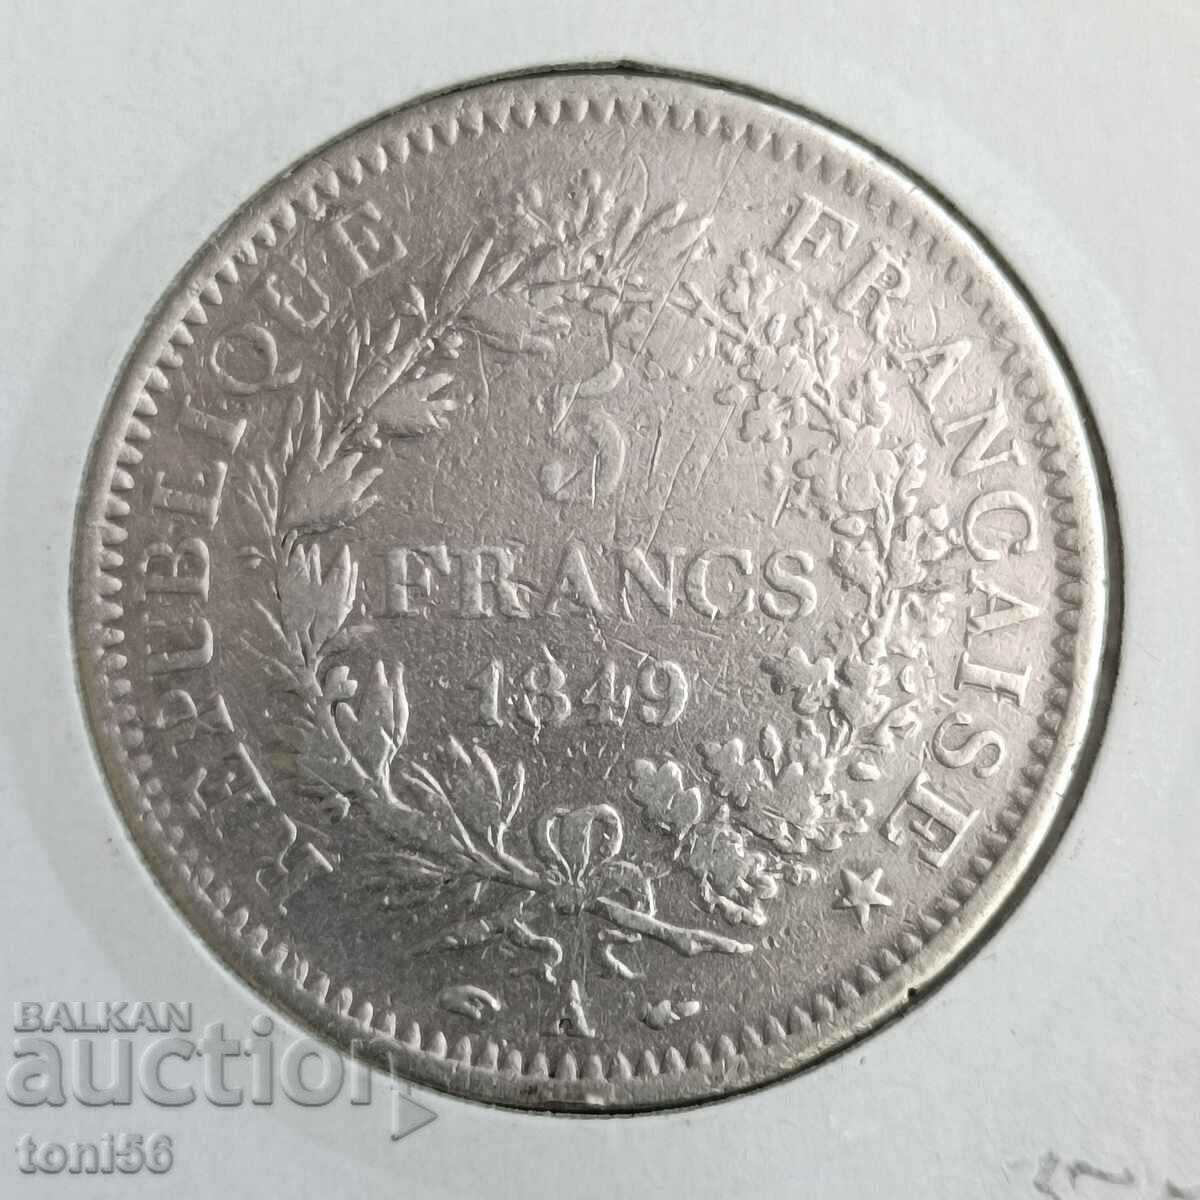 France 5 francs 1849 silver